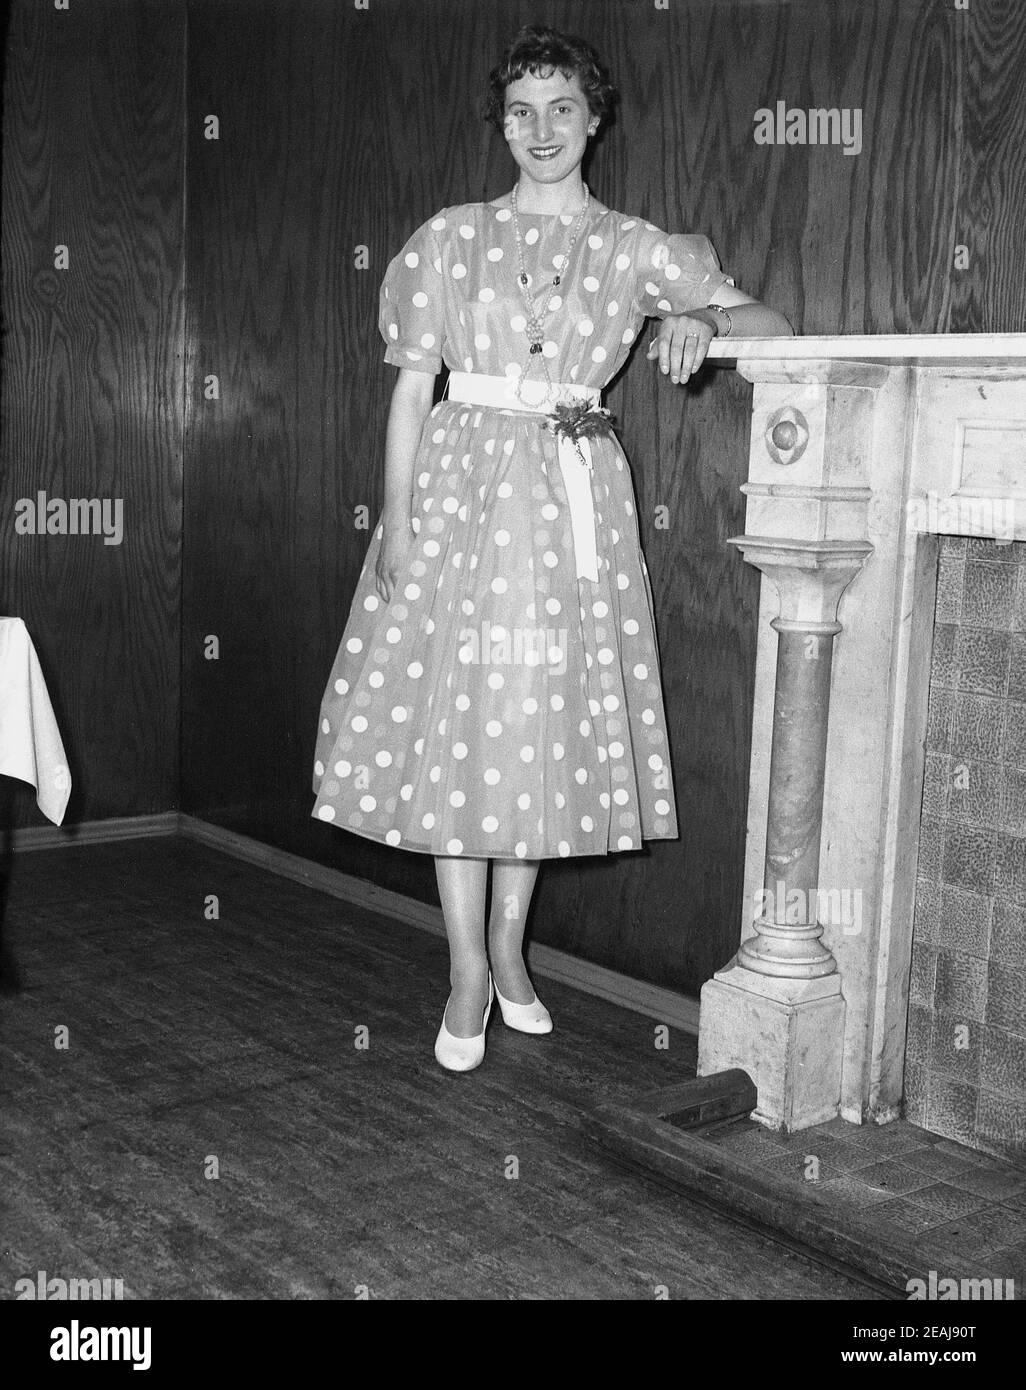 années 1950, historique, une jeune femme portant une robe à pois ou à pois debout dans une salle de réception à côté d'une cheminée. Elle célèbre son 21at anniversaire. Une telle robe de fête avec des points sur un fond avec une ceinture autour du milieu était à la mode à l'époque de l'oscillation rétro et de l'ère rockabiliy, l'un des premiers styles de rock et de musique de rouleau. Banque D'Images